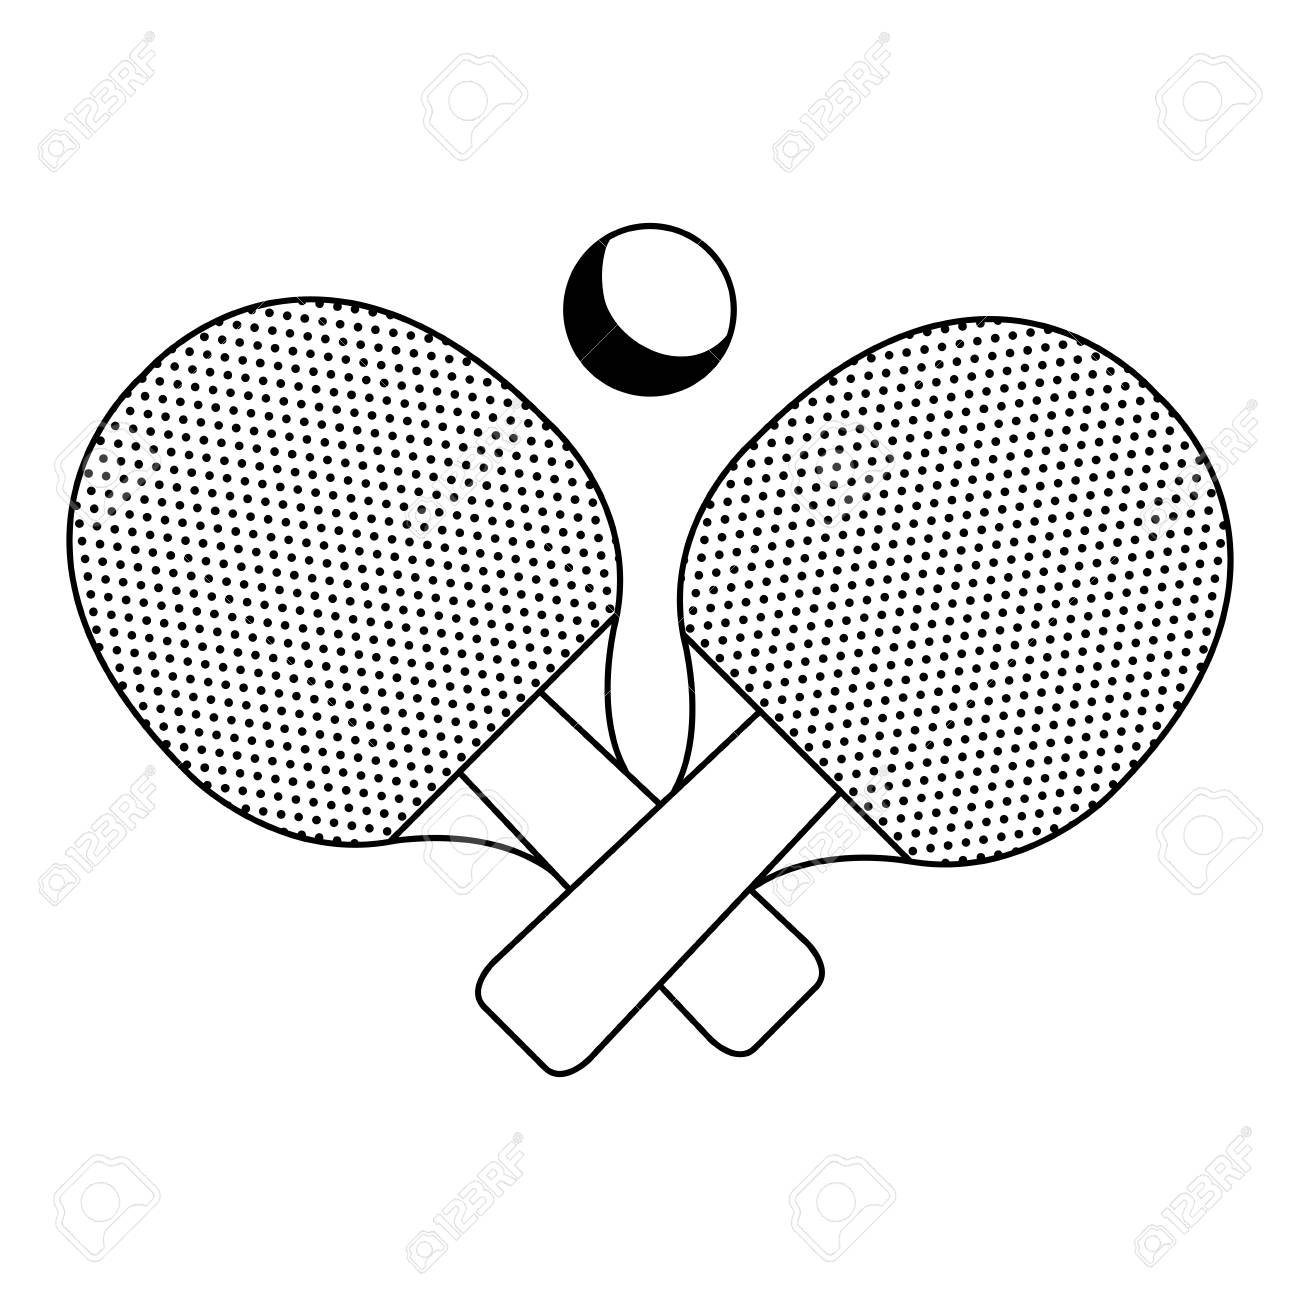 Нарисовать ракетку для настольного тенниса